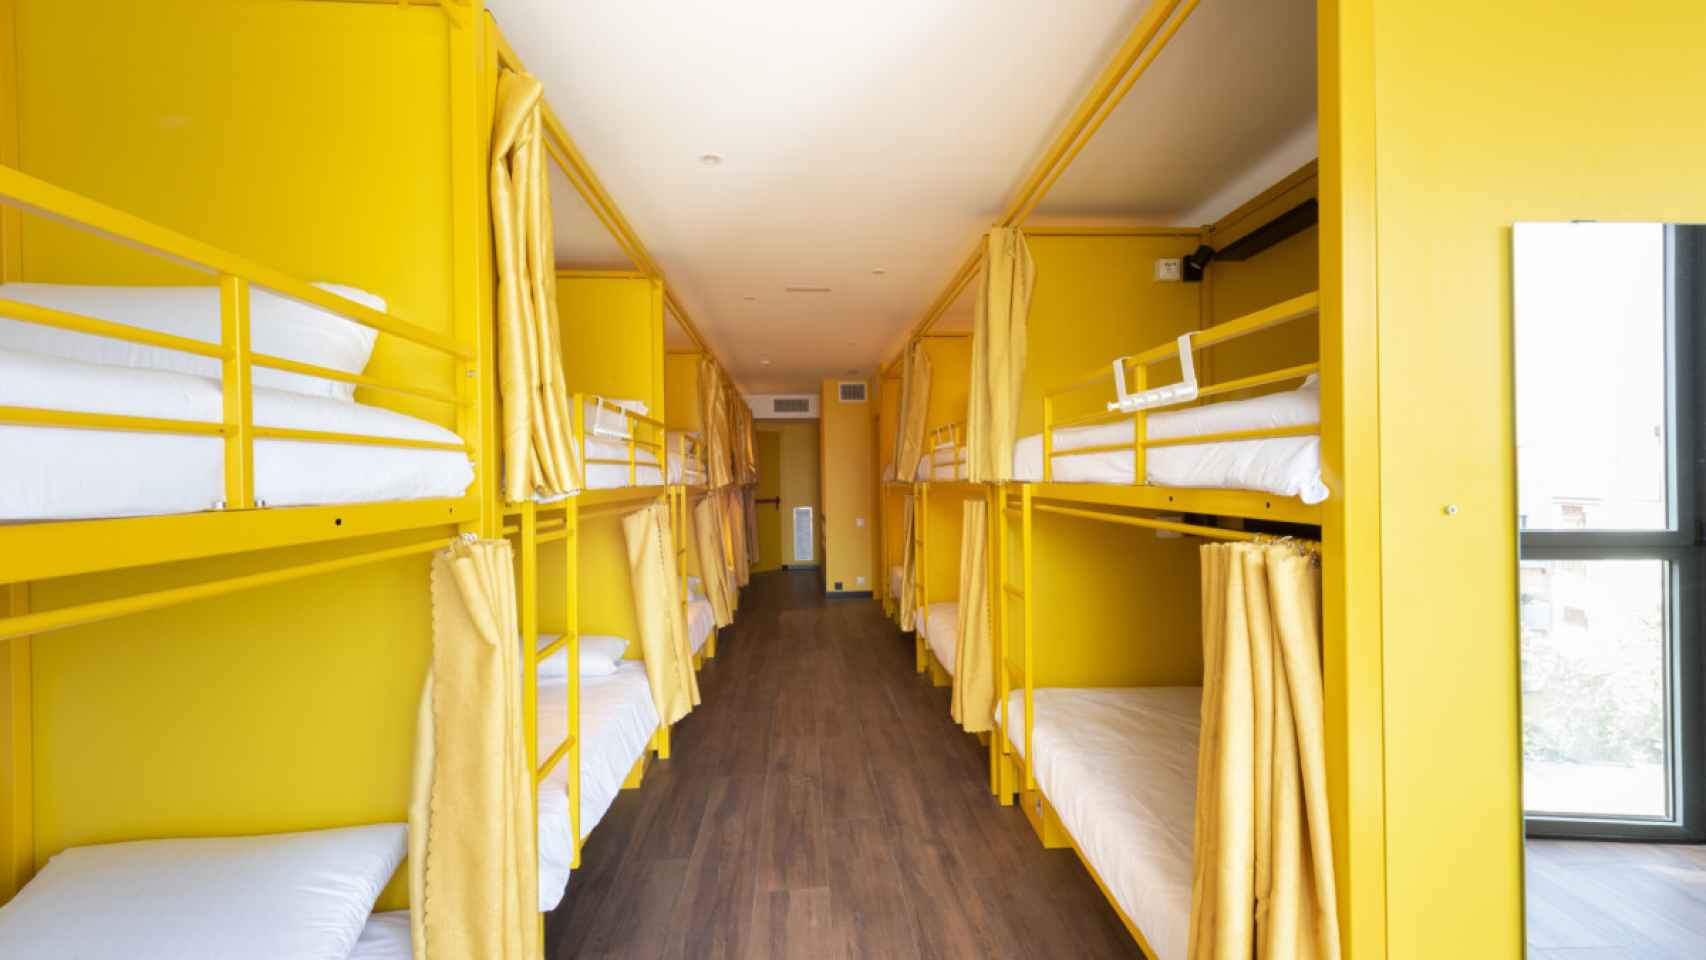 Una habitación de Hostelle Barcelona, en amarillo